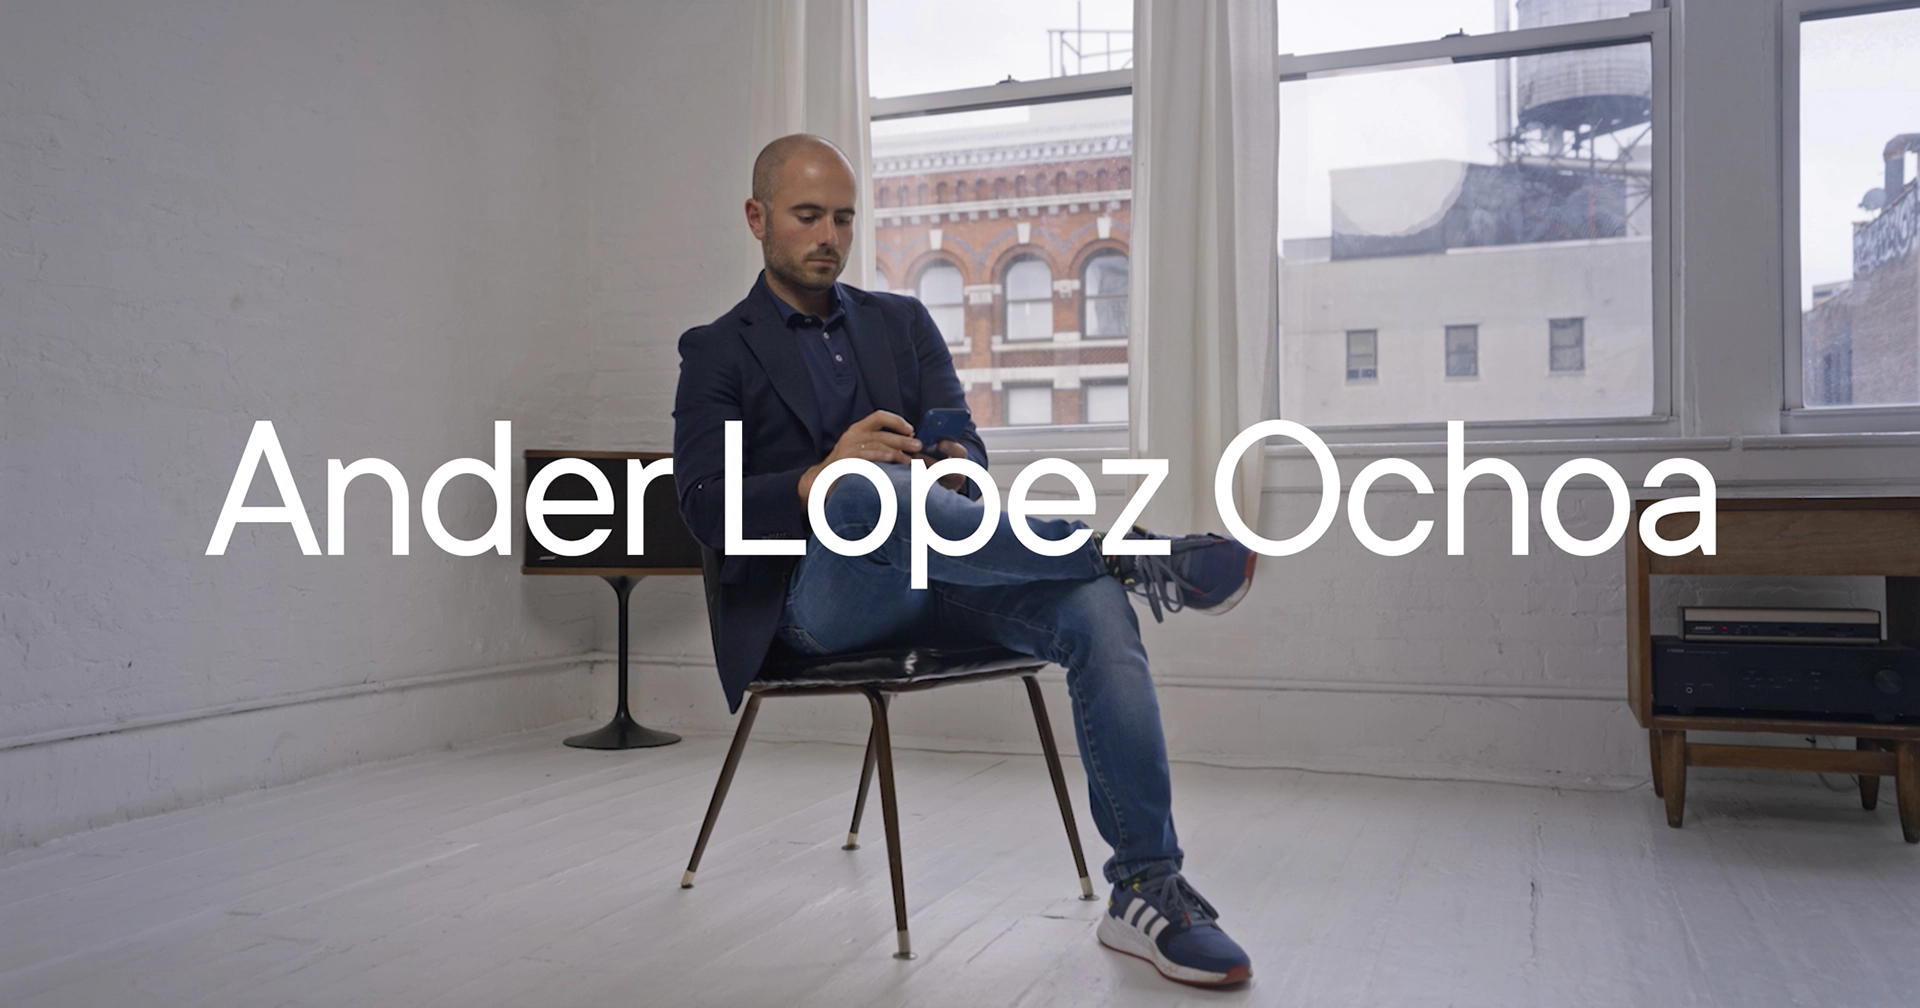 Ander Lopez Ochoa Video